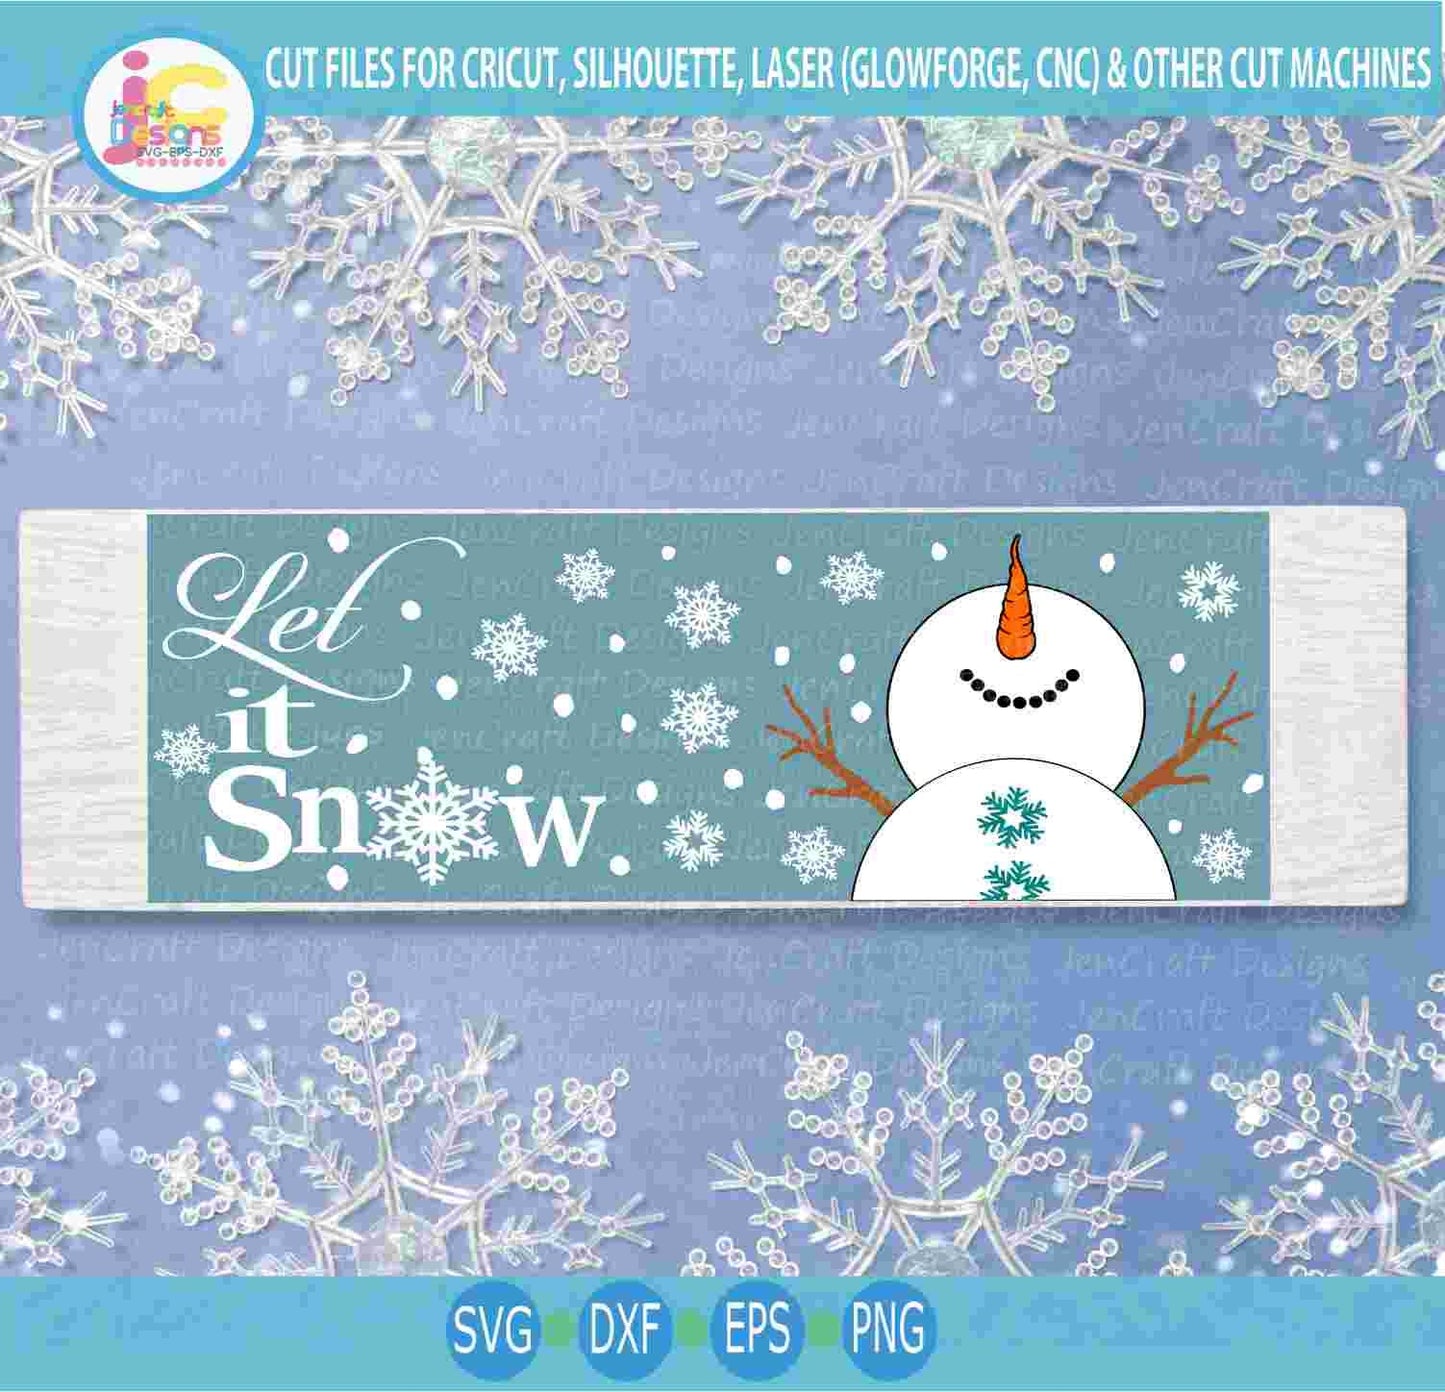 Snowman svg, Let it Snow Long sign SVG Winter Snowman design looking up, silhouette cut fles, cricut Svg, Eps Dxf Png laser Clipart - JenCraft Designs